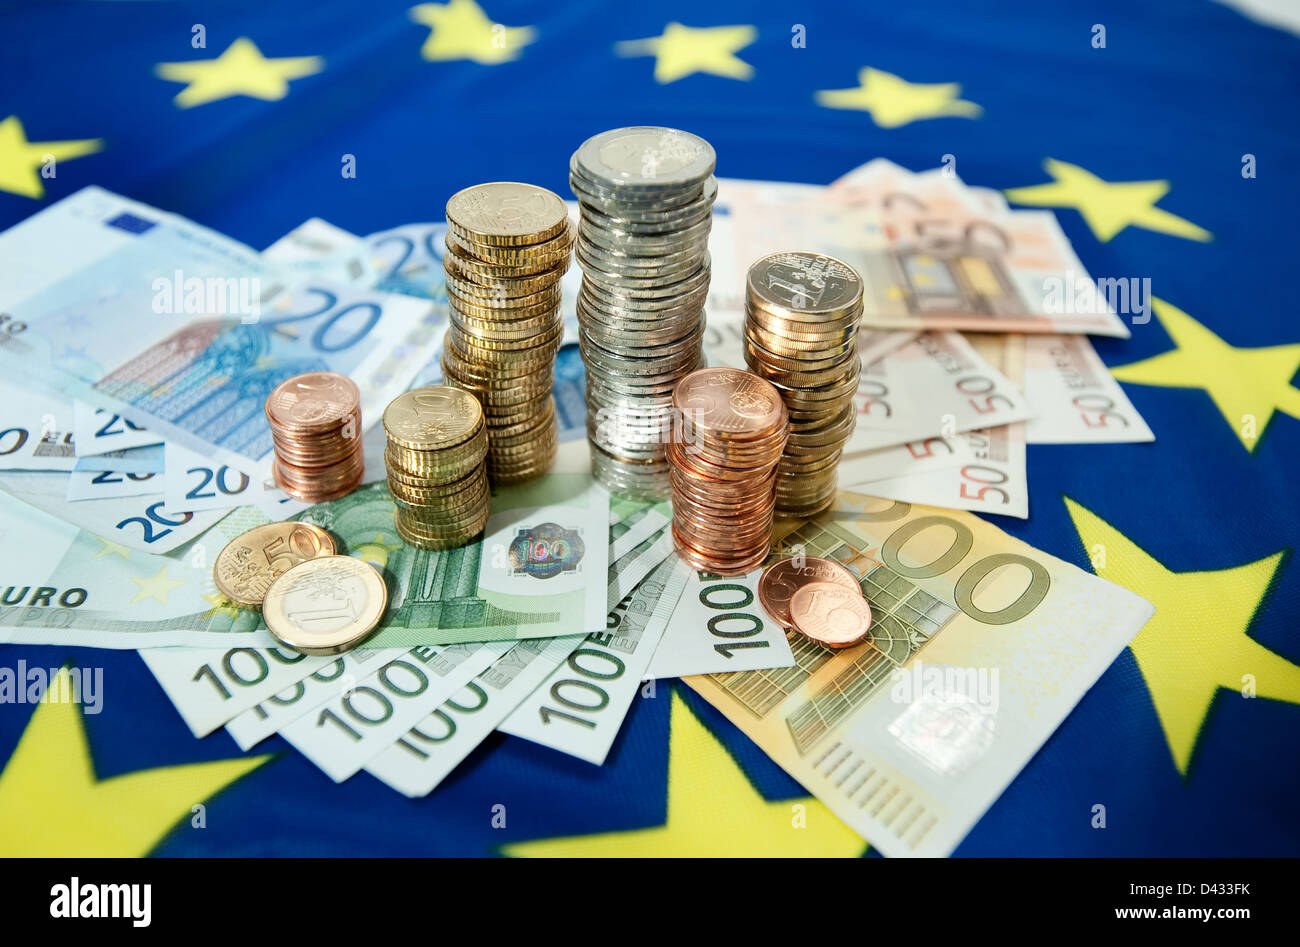 Ad Amburgo in Germania, le banconote in euro e Euromuenzen su una bandiera europea Foto Stock